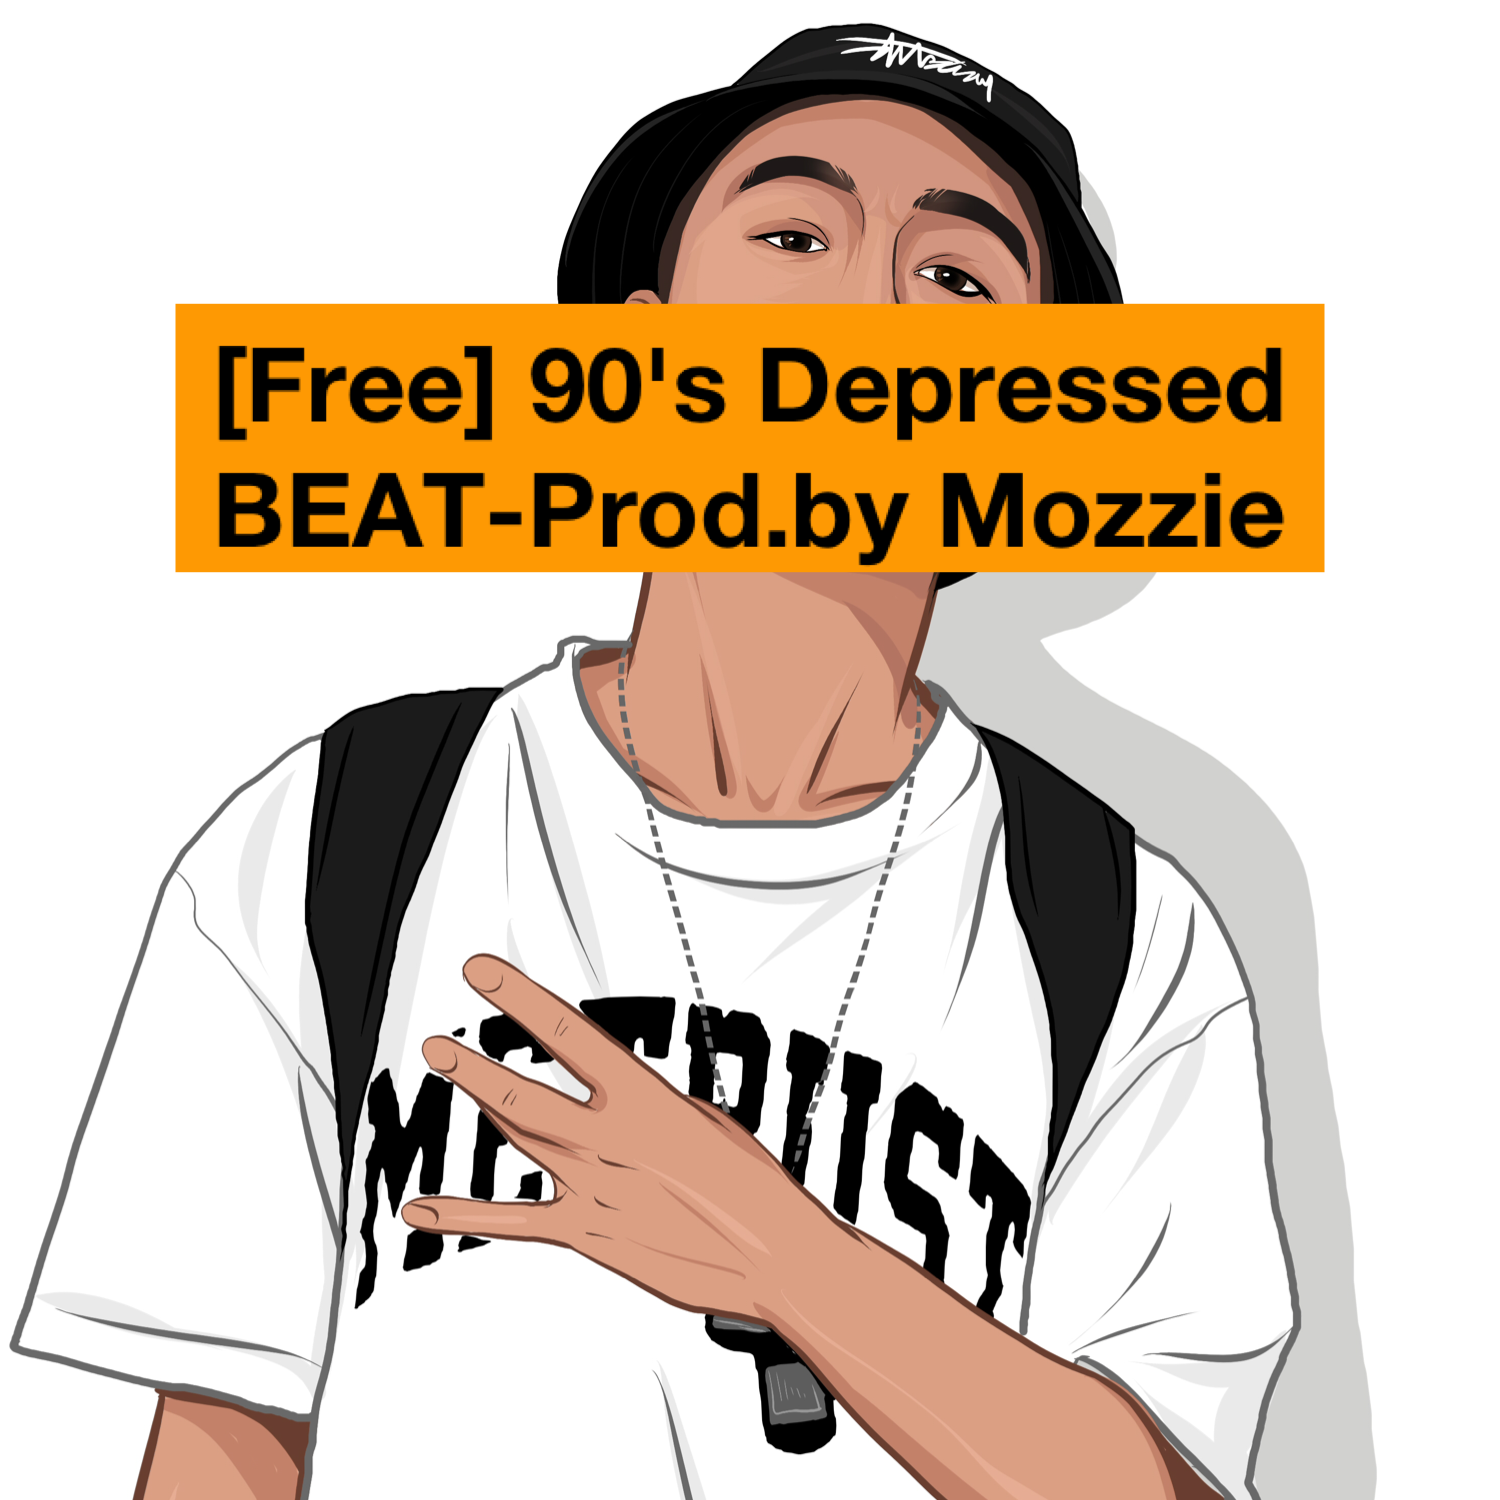 [Free] 90's Depressed BEAT-Prod.by Mozzie